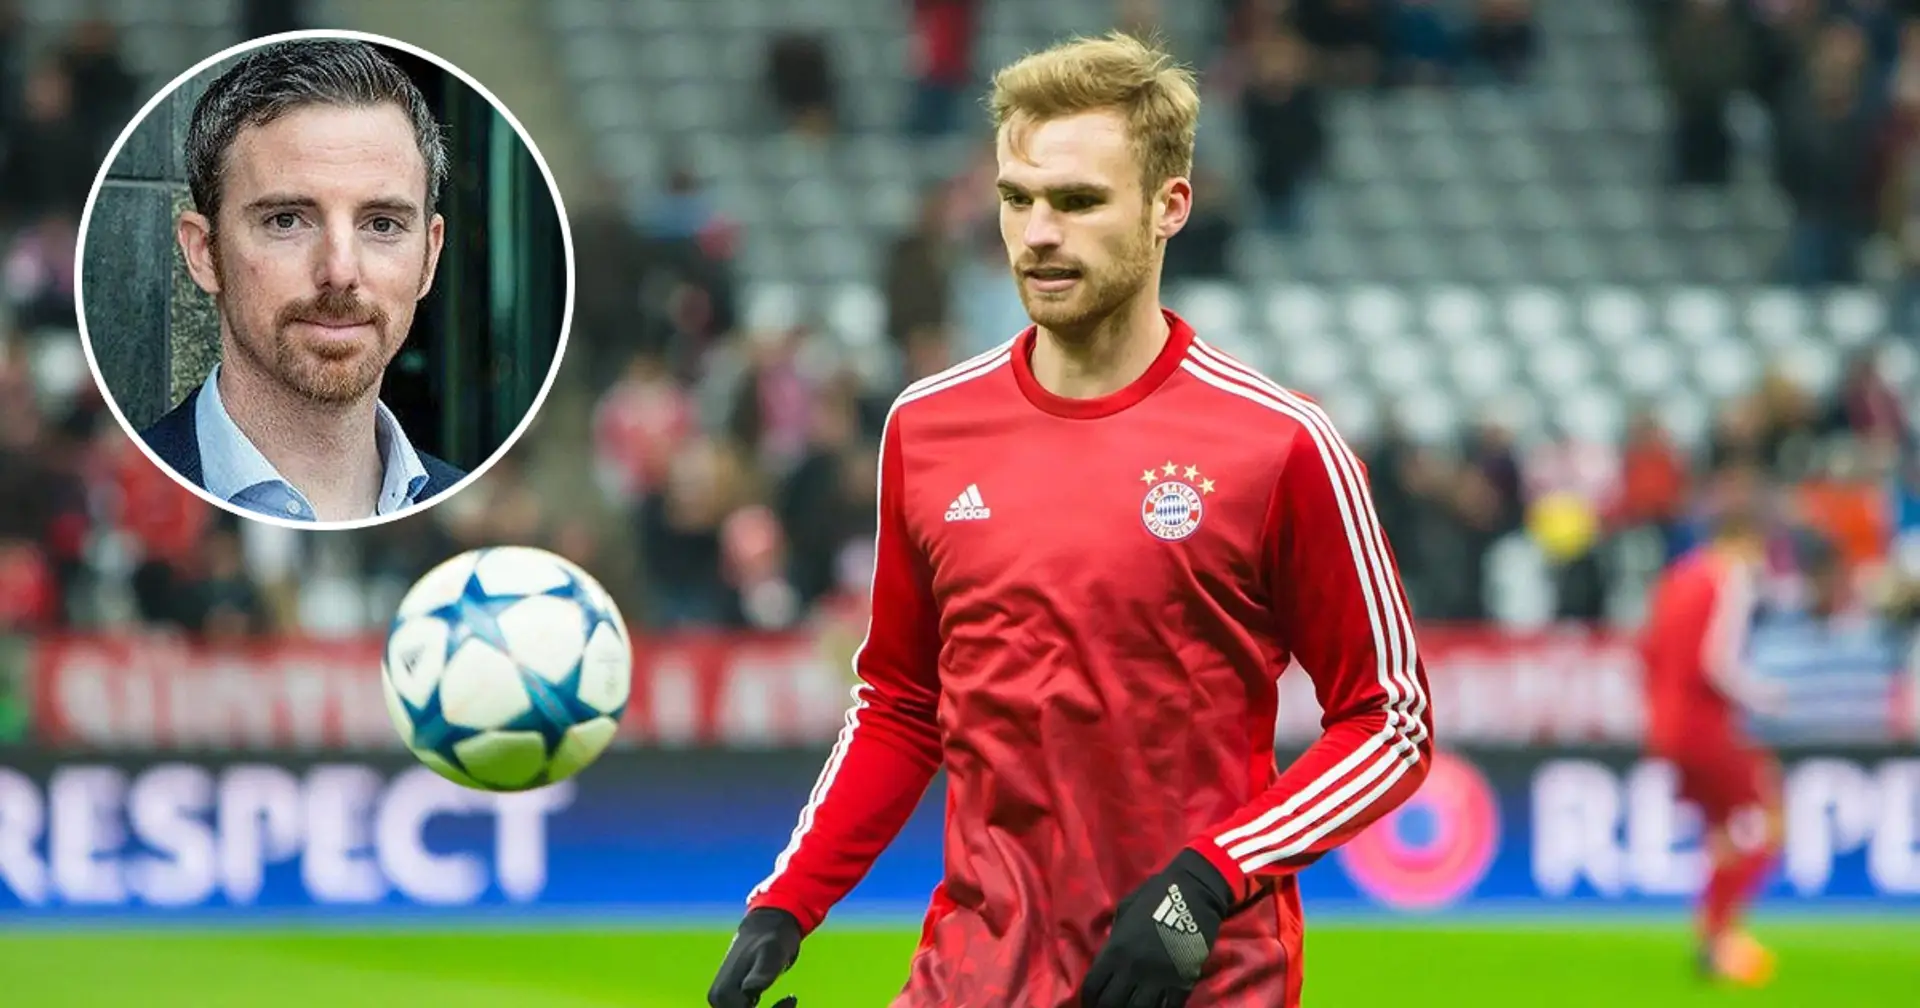 Nachwuchsleiter des DFB erinnert sich an Kirchhoffs Transfer zum FC Bayern: "Nur selten hilfreich, so früh zu wechseln"